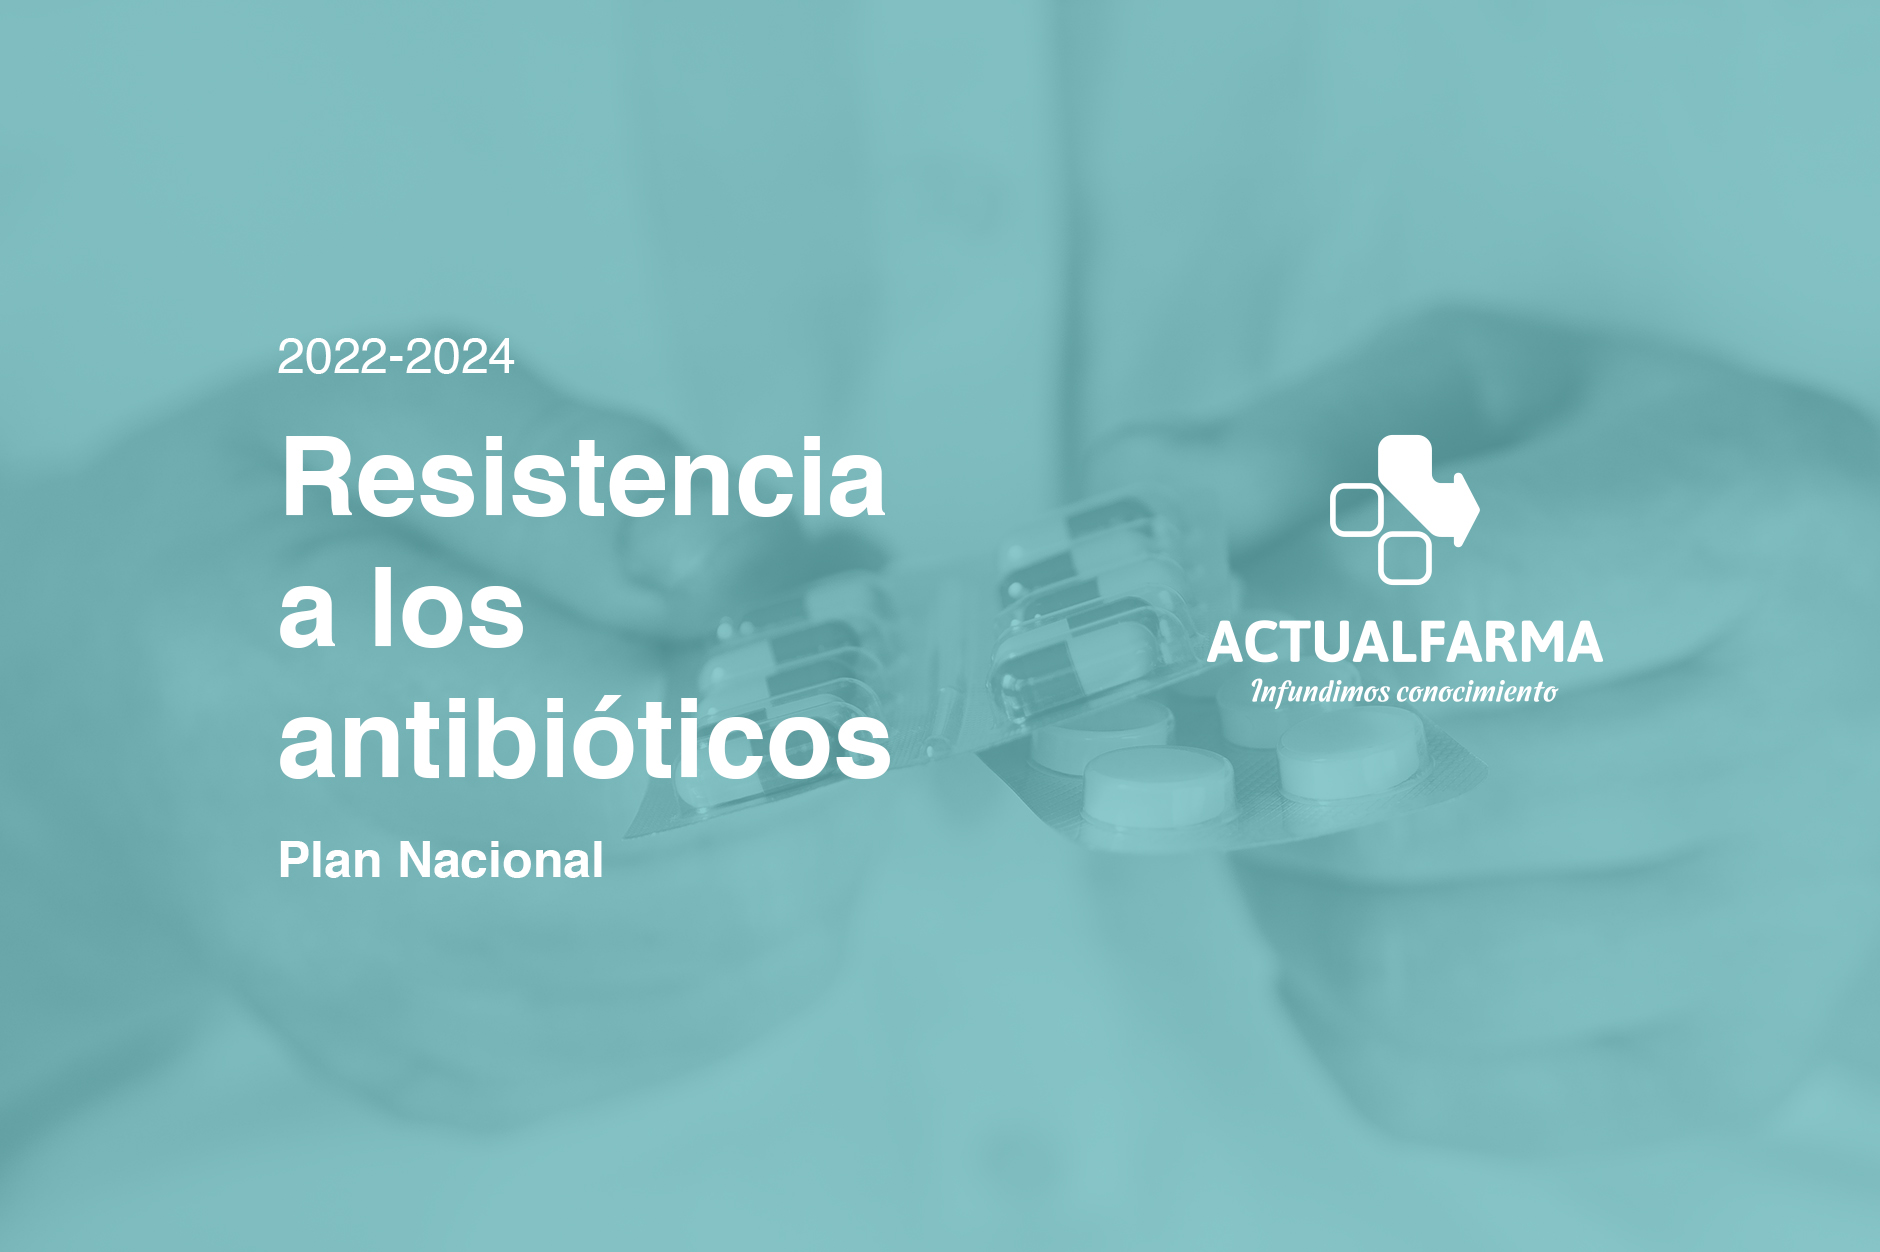 Plan Nacional frente a la resistencia a los antibióticos